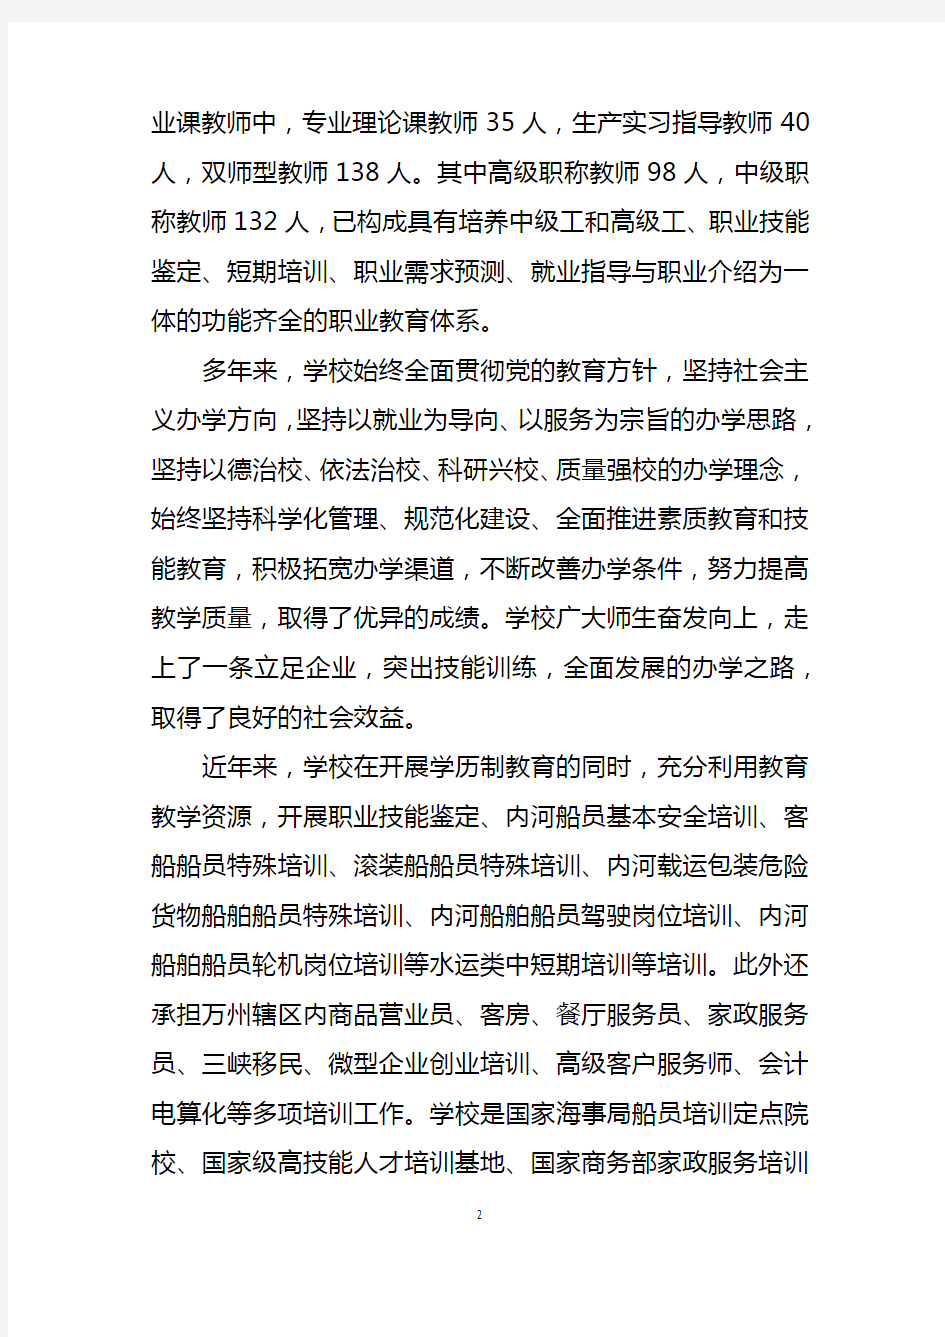 重庆市万州高级技工学校自评报告